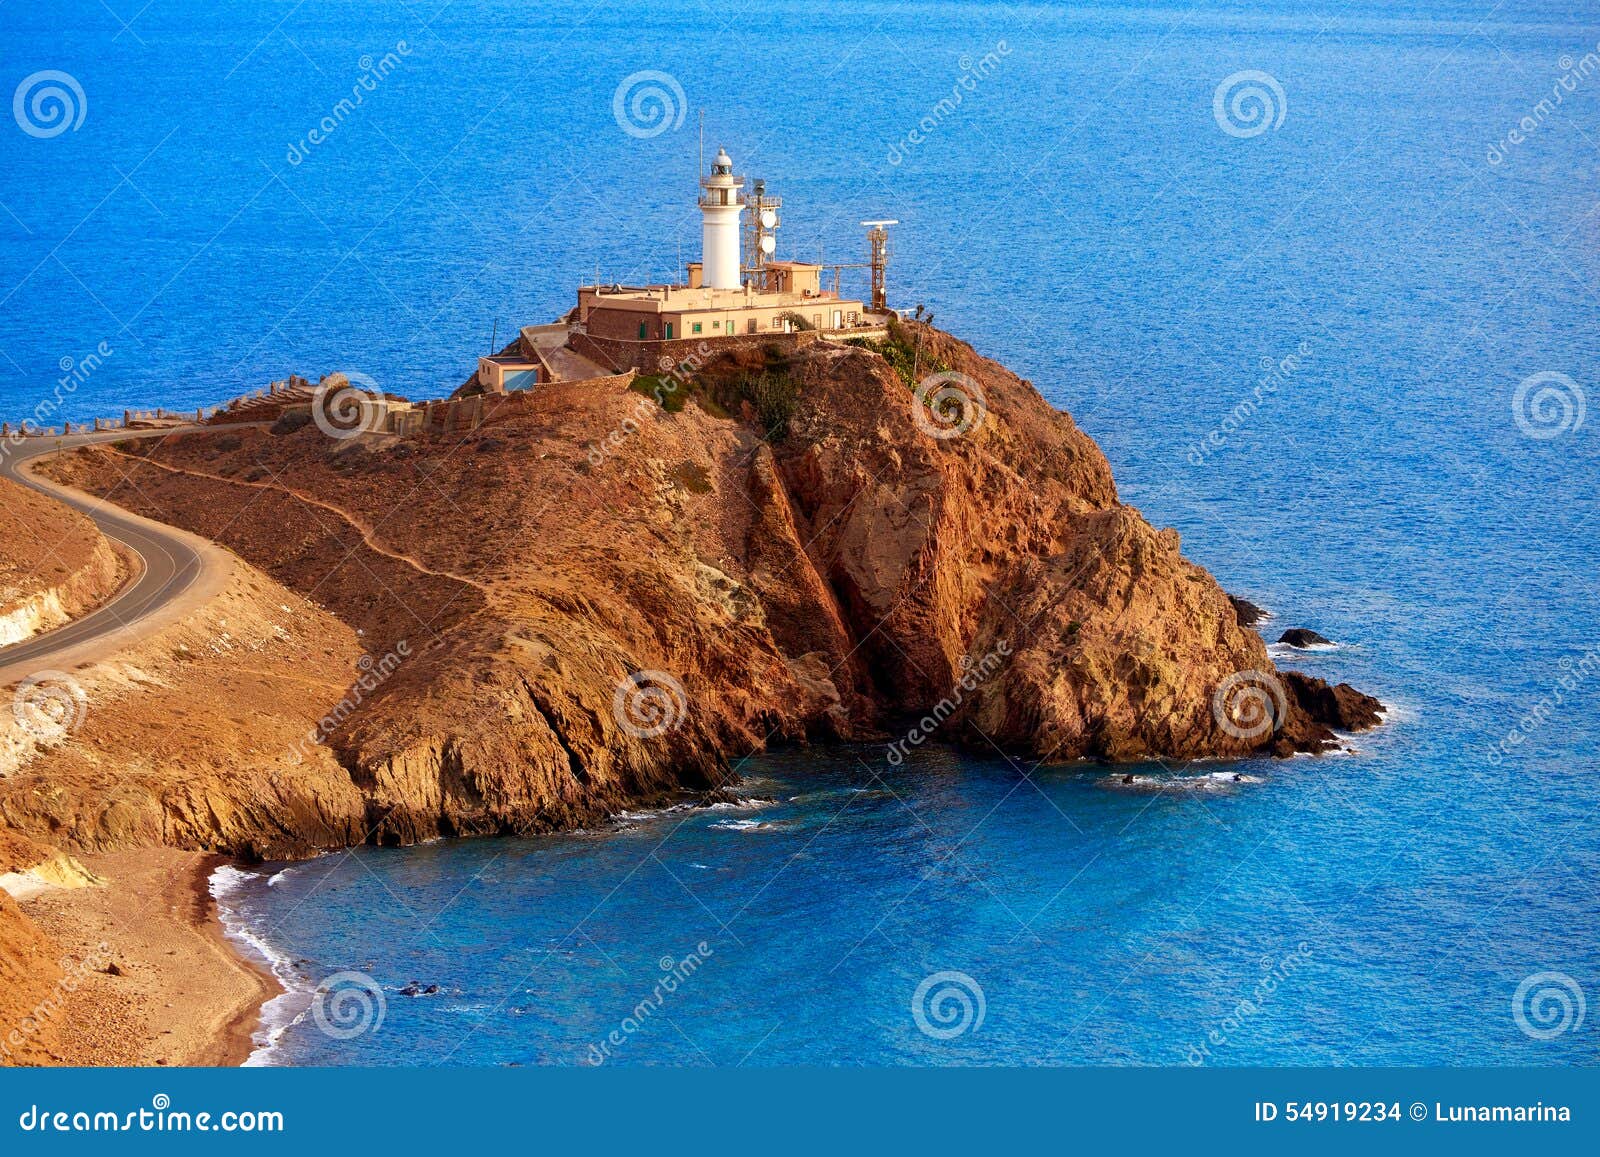 almeria cabo de gata lighthouse mediterranean spain